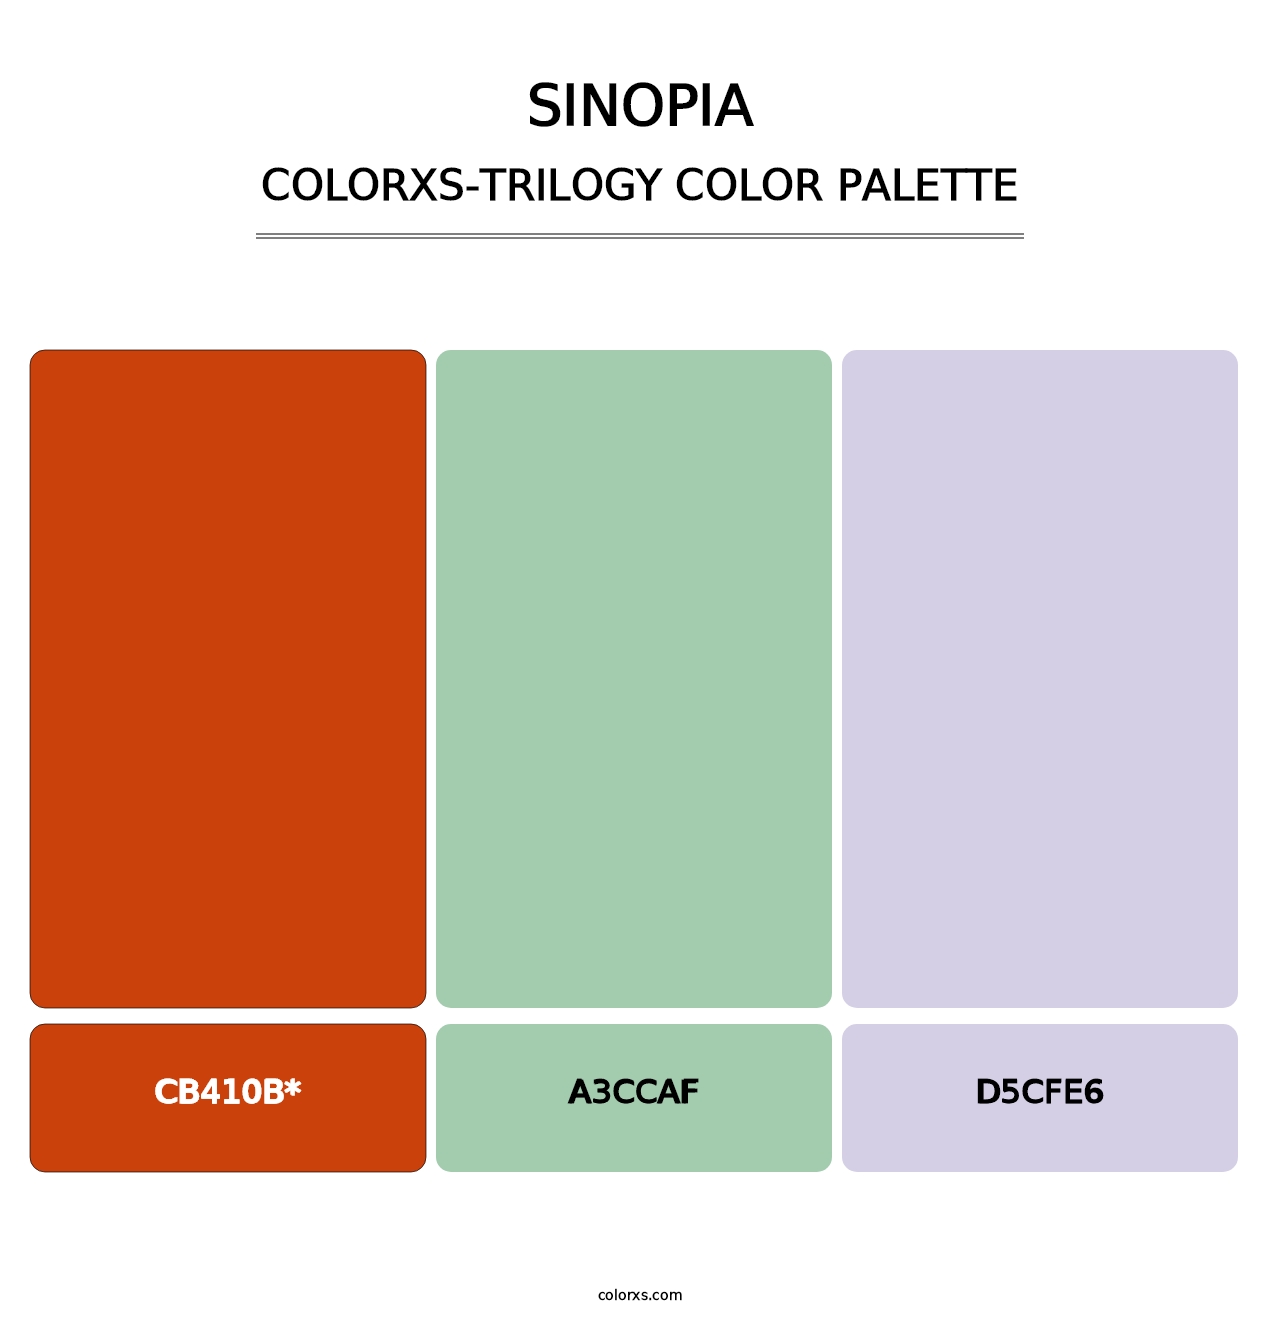 Sinopia - Colorxs Trilogy Palette